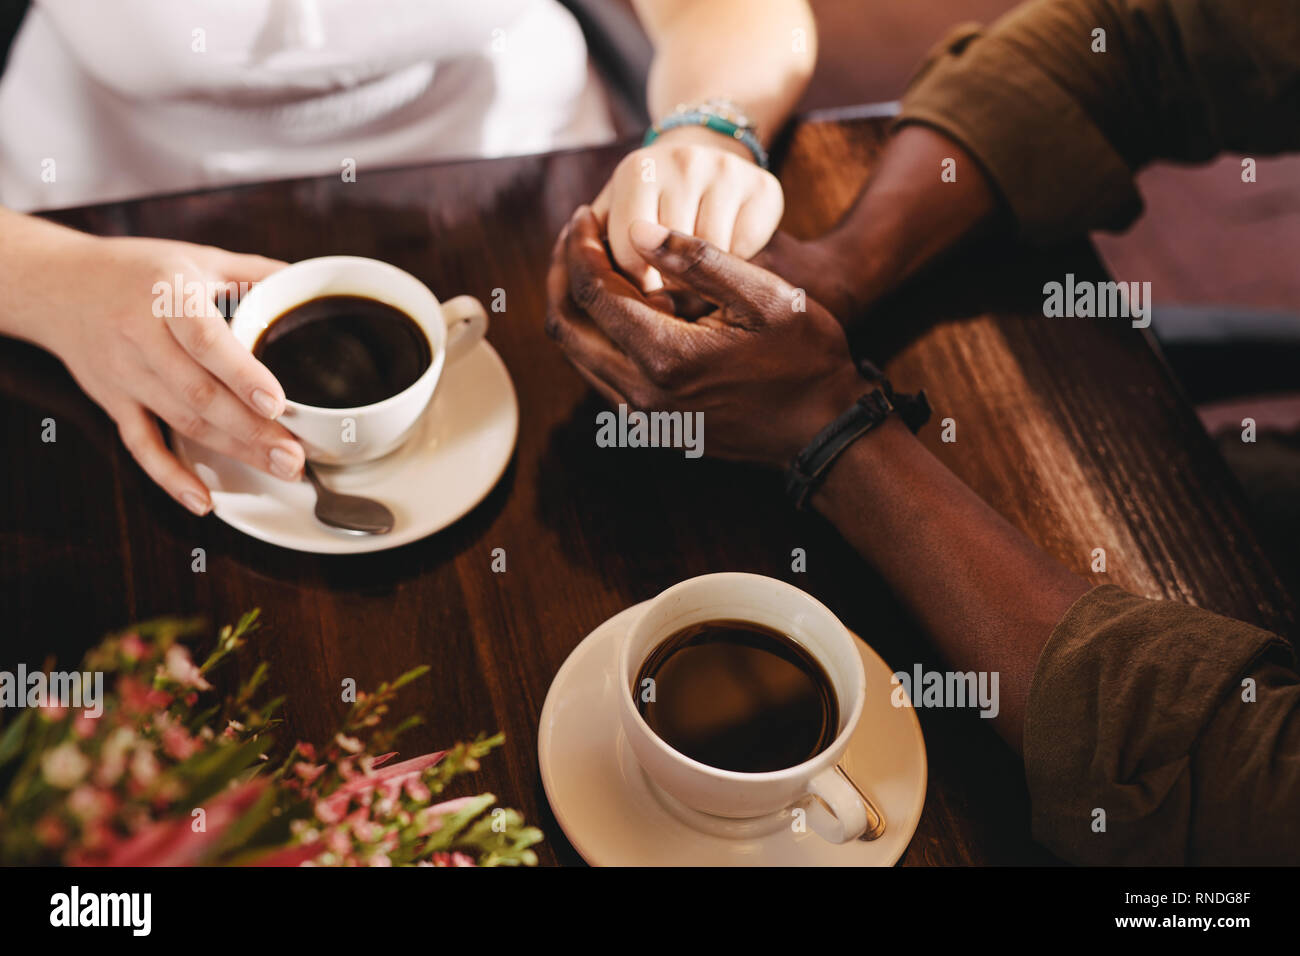 Pareja en una fecha sentado en una mesa de café. Primer plano de un hombre sujetando la mano de una mujer sobre una mesa con tazas de café al lado. Foto de stock